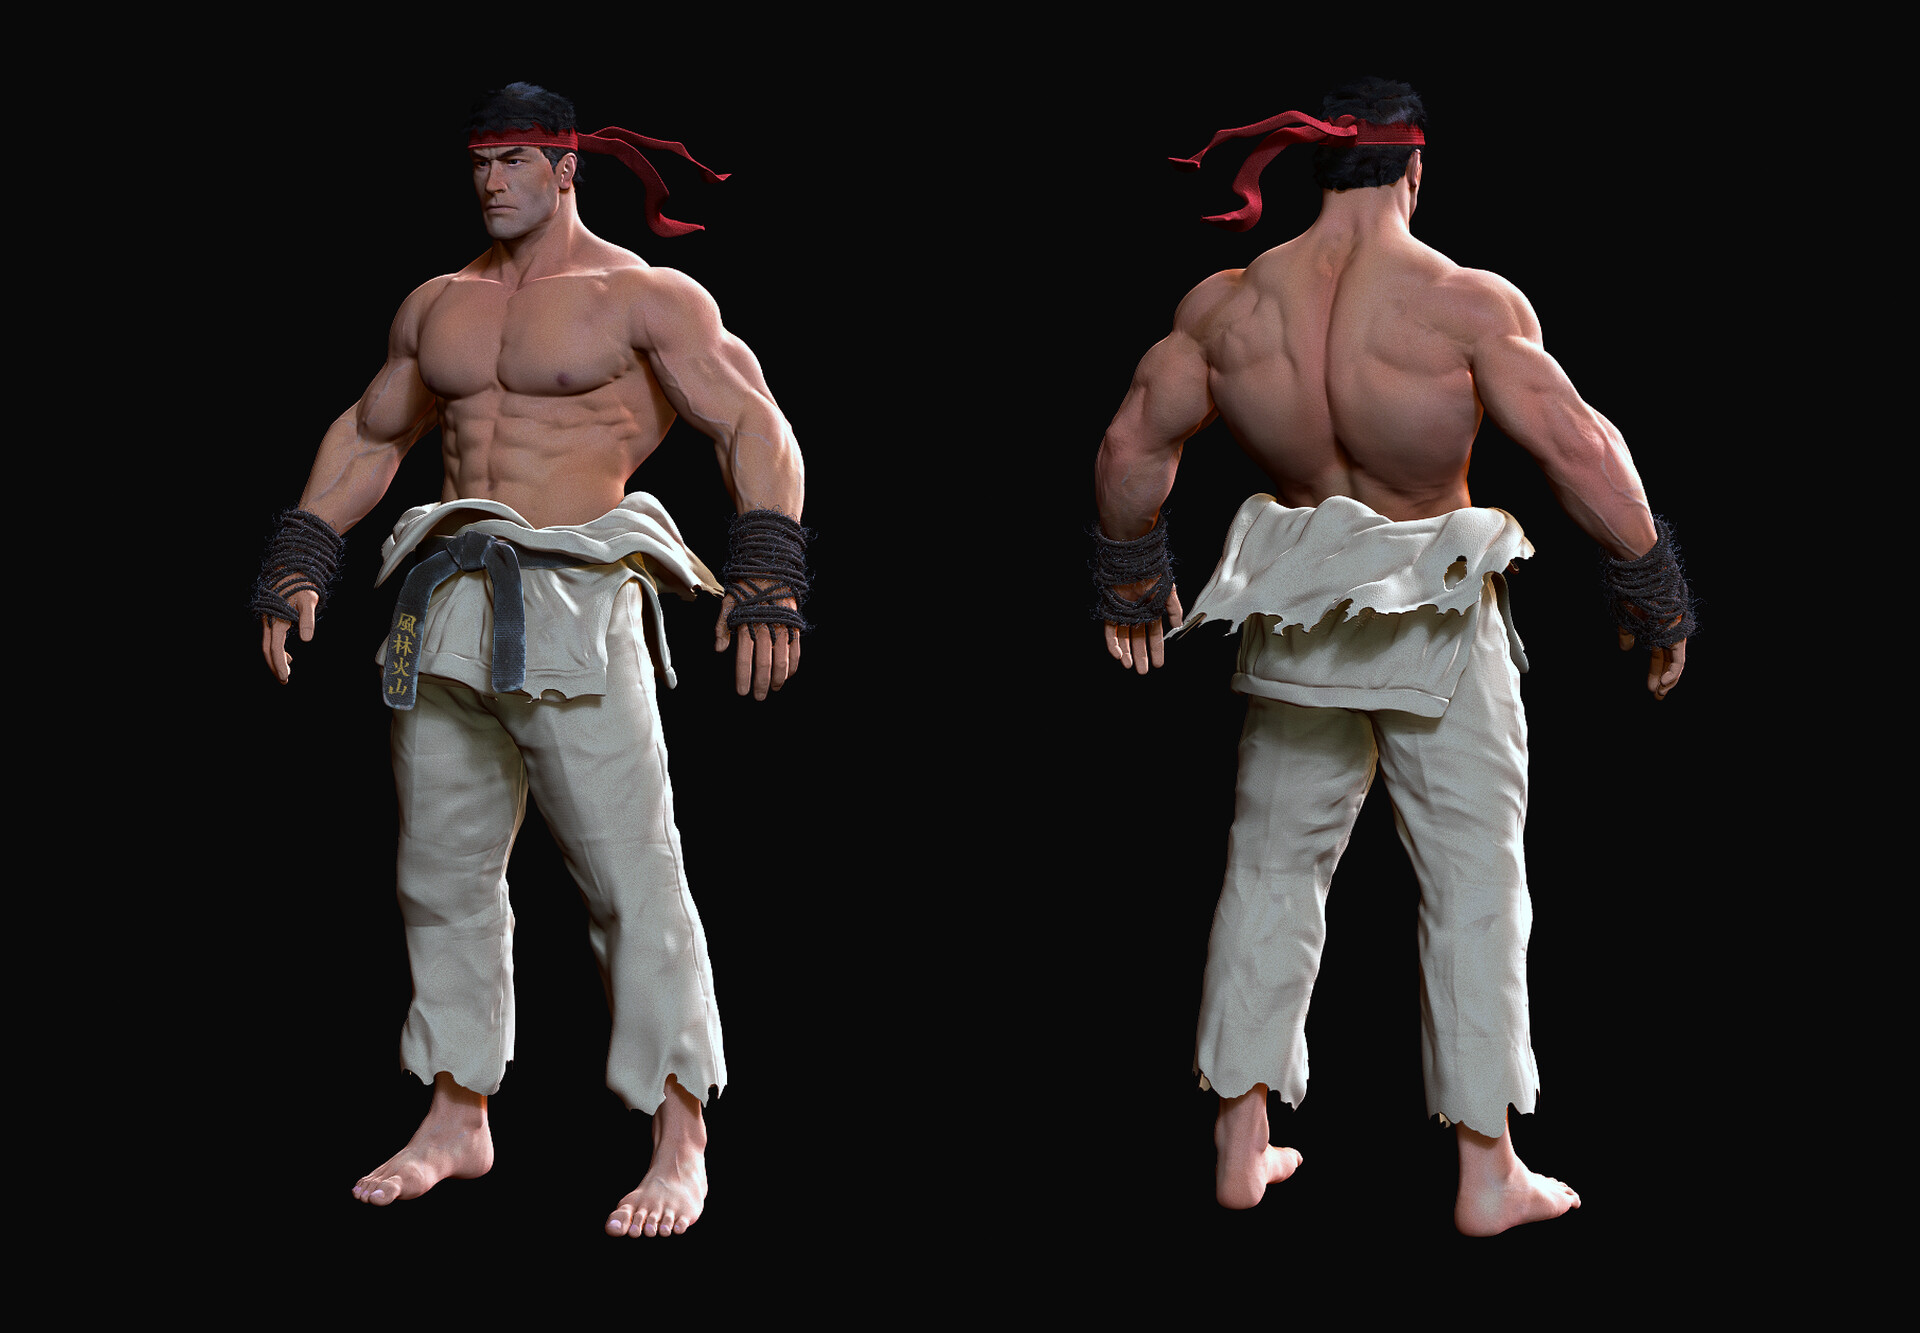 ArtStation - Street Fighter Ryu